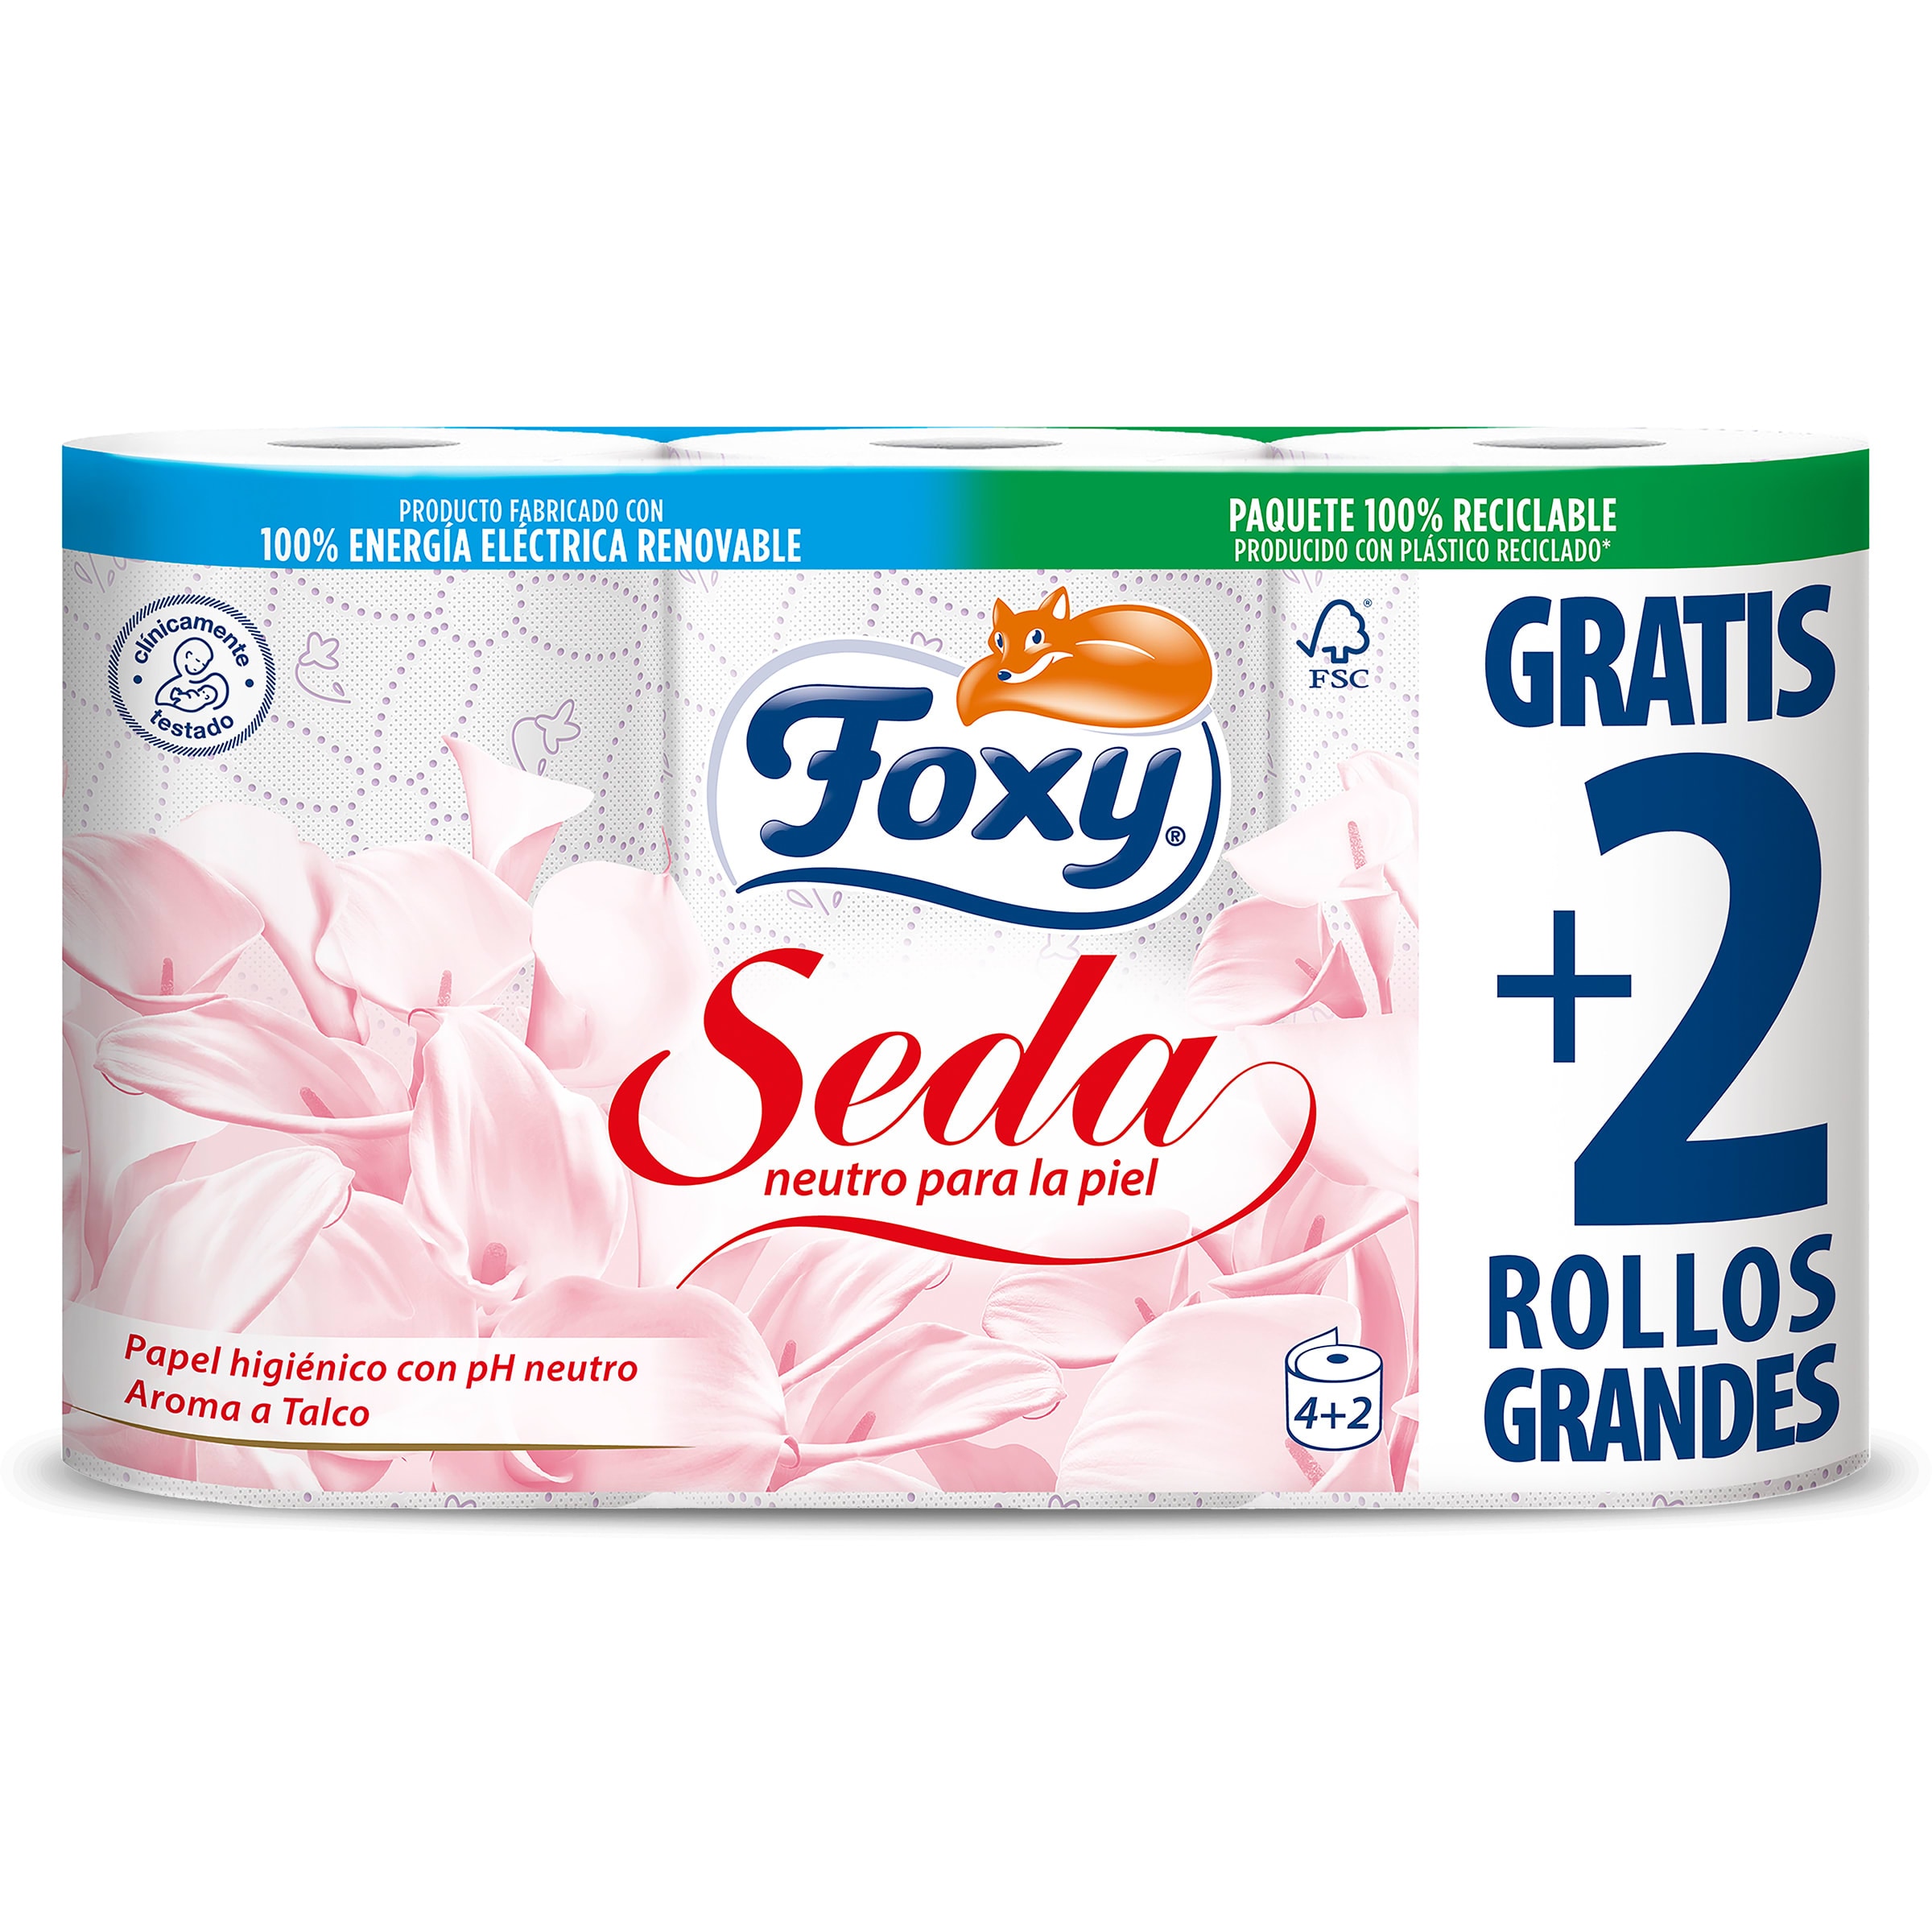 Papel higiénico Foxy bolsa 6 unidades - Supermercados DIA